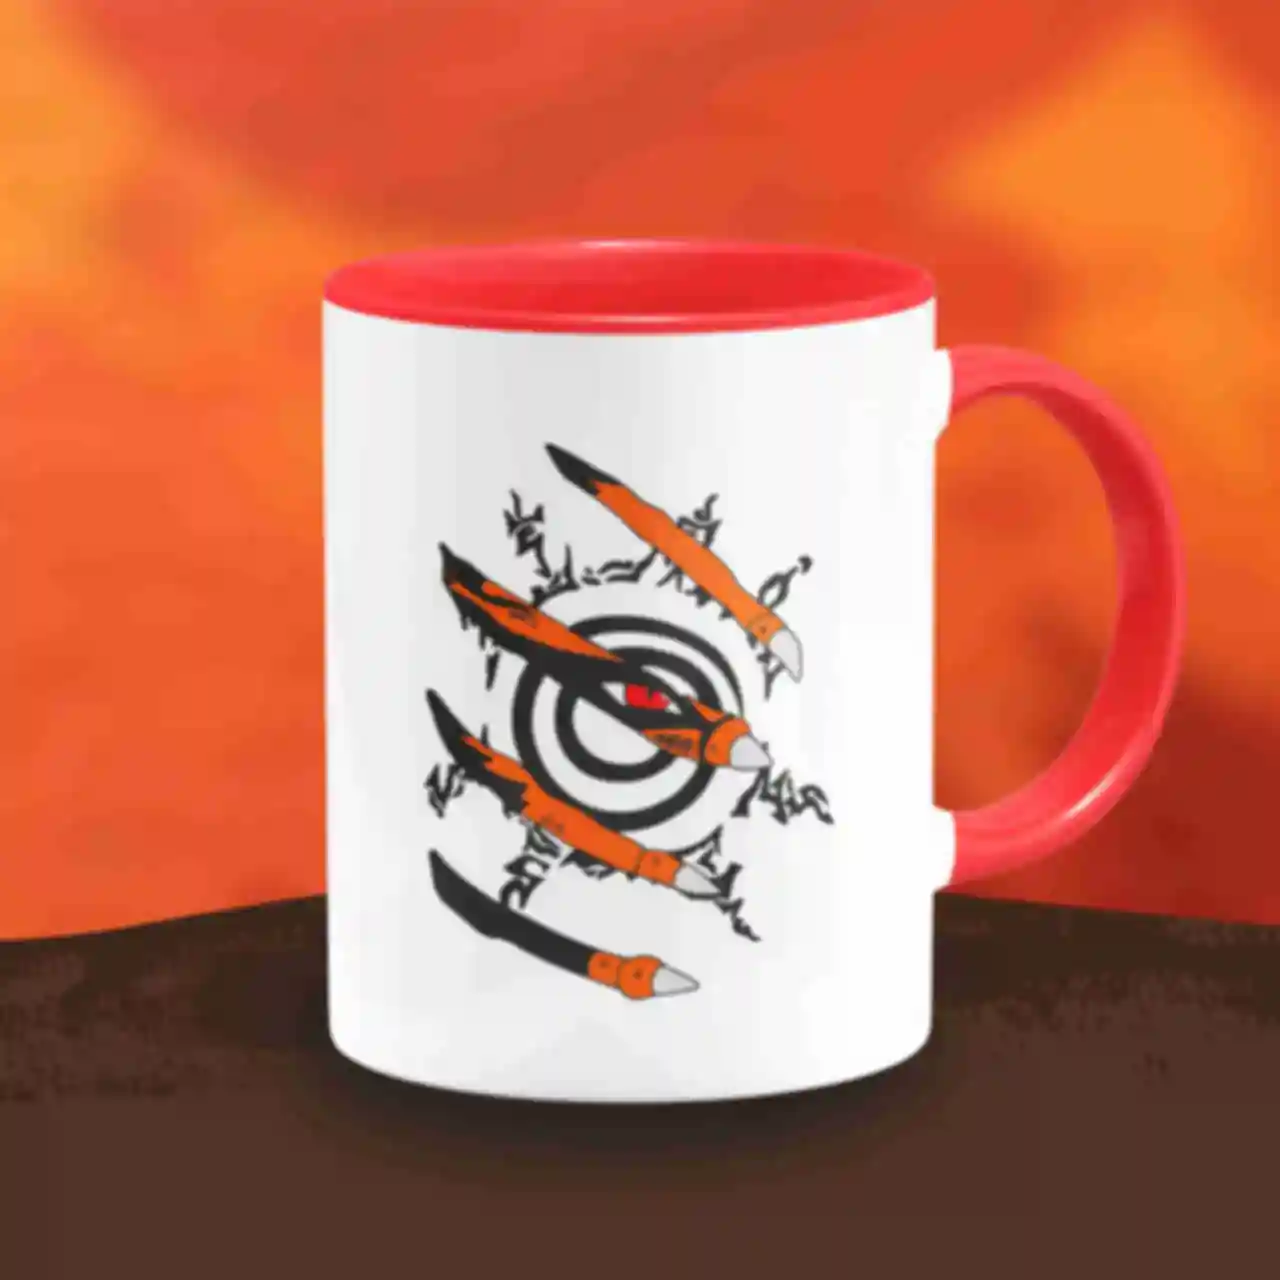 Чашка ⦁ Курама ⦁ Кружка Девятихвостый кицунэ ⦁ Kurama ⦁ Сувениры и посуда ⦁ Подарки в стиле аниме Naruto. Фото №75